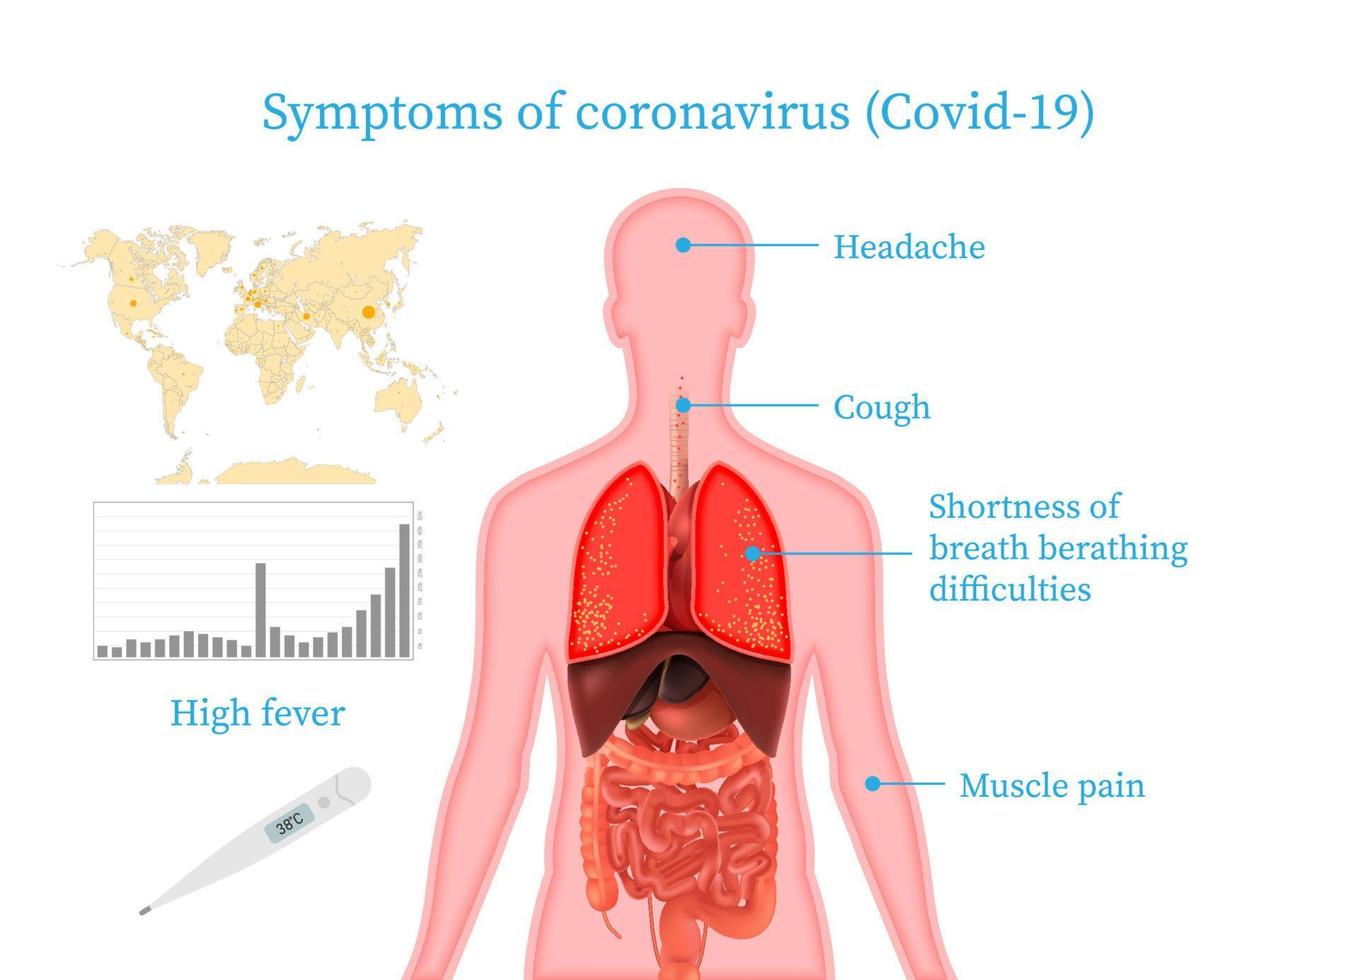 Medical infographic coronavirus symptoms, risk factors, prevention. 2019 nCoV. Symptoms of coronavirus fever, shortness of breath, cough. Vector illustration.